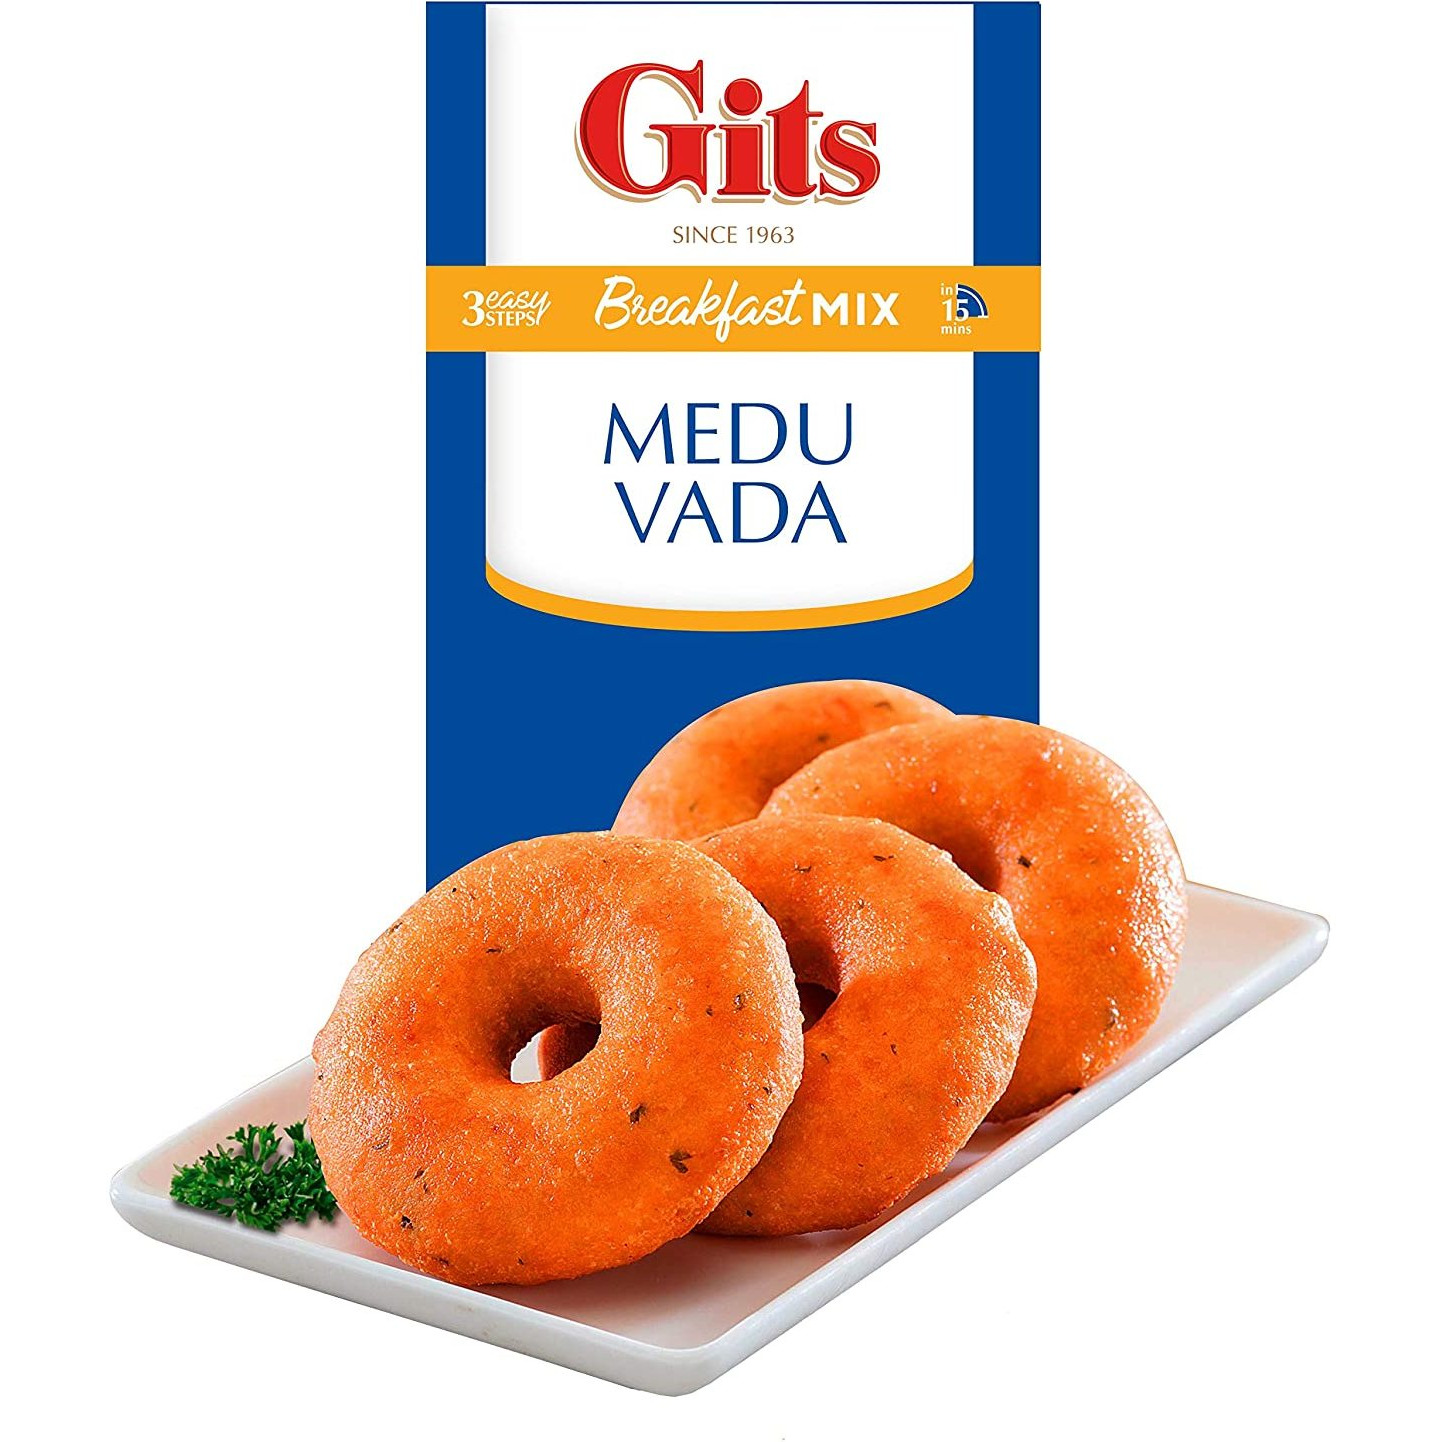 Gits Medu Vada Mix - 200 Gm (7 Oz)